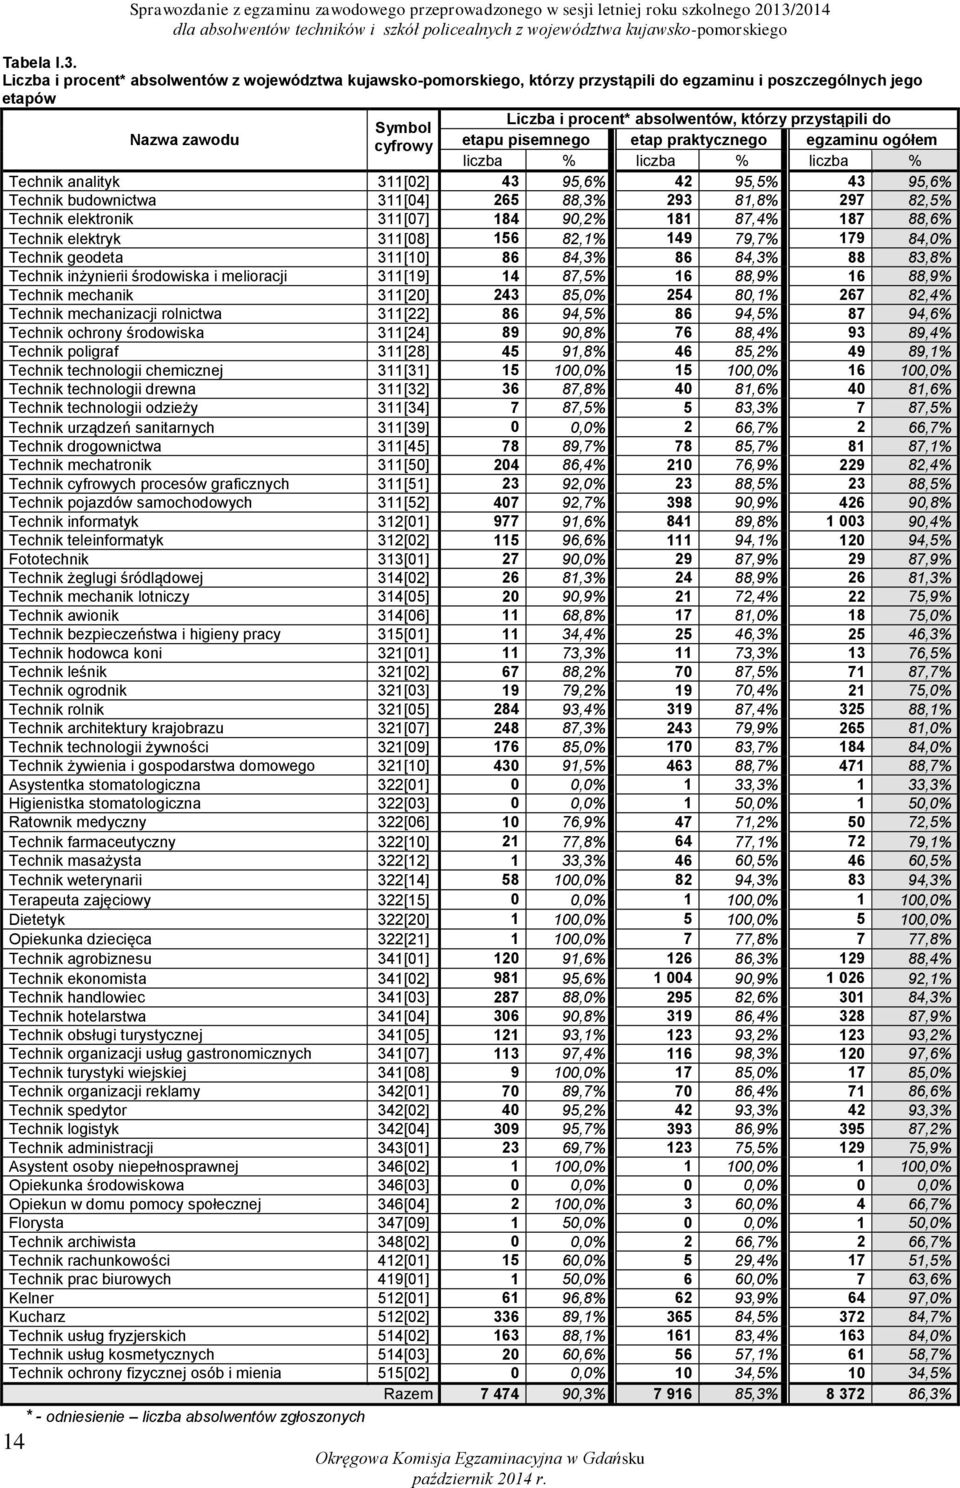 Liczba i procent* absolwentów z województwa kujawsko-pomorskiego, którzy przystąpili do egzaminu i poszczególnych jego etapów Nazwa zawodu Symbol cyfrowy Liczba i procent* absolwentów, którzy